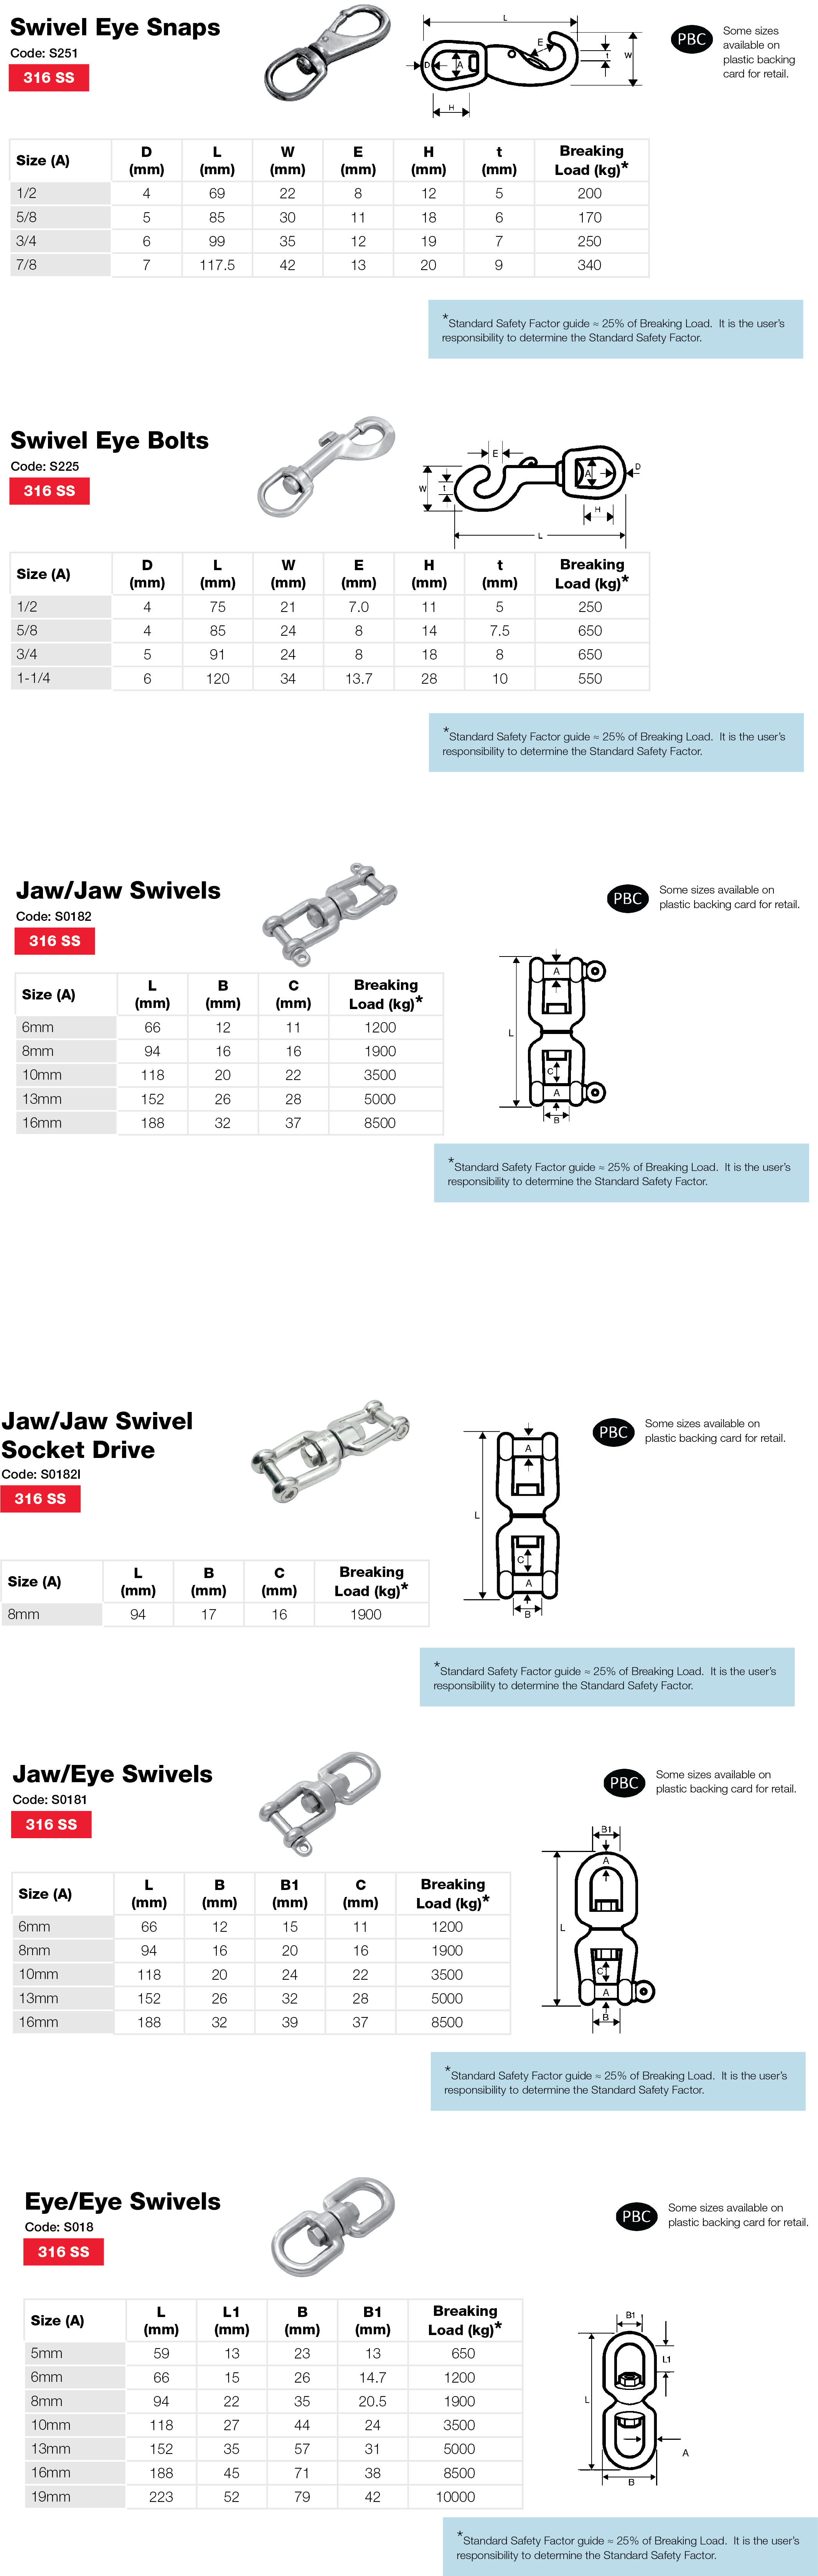 Stainless Marine Swivel Performance Data